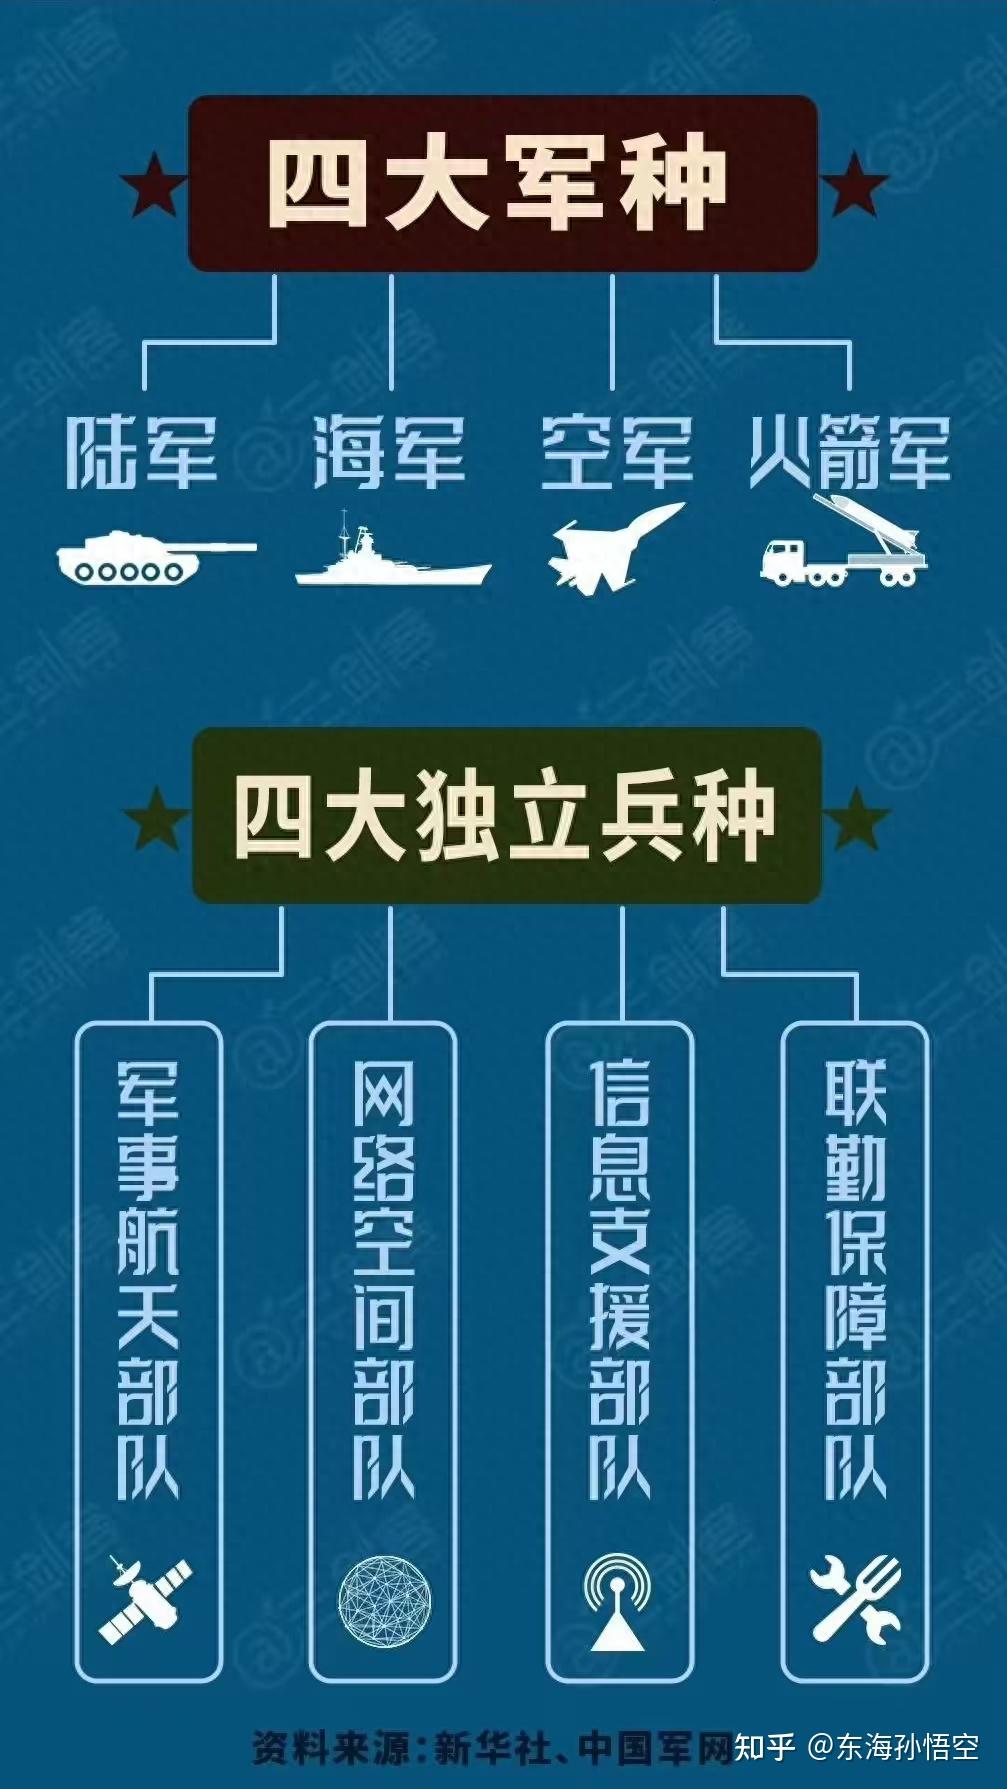 悟空观察:中国新军种和军工etf